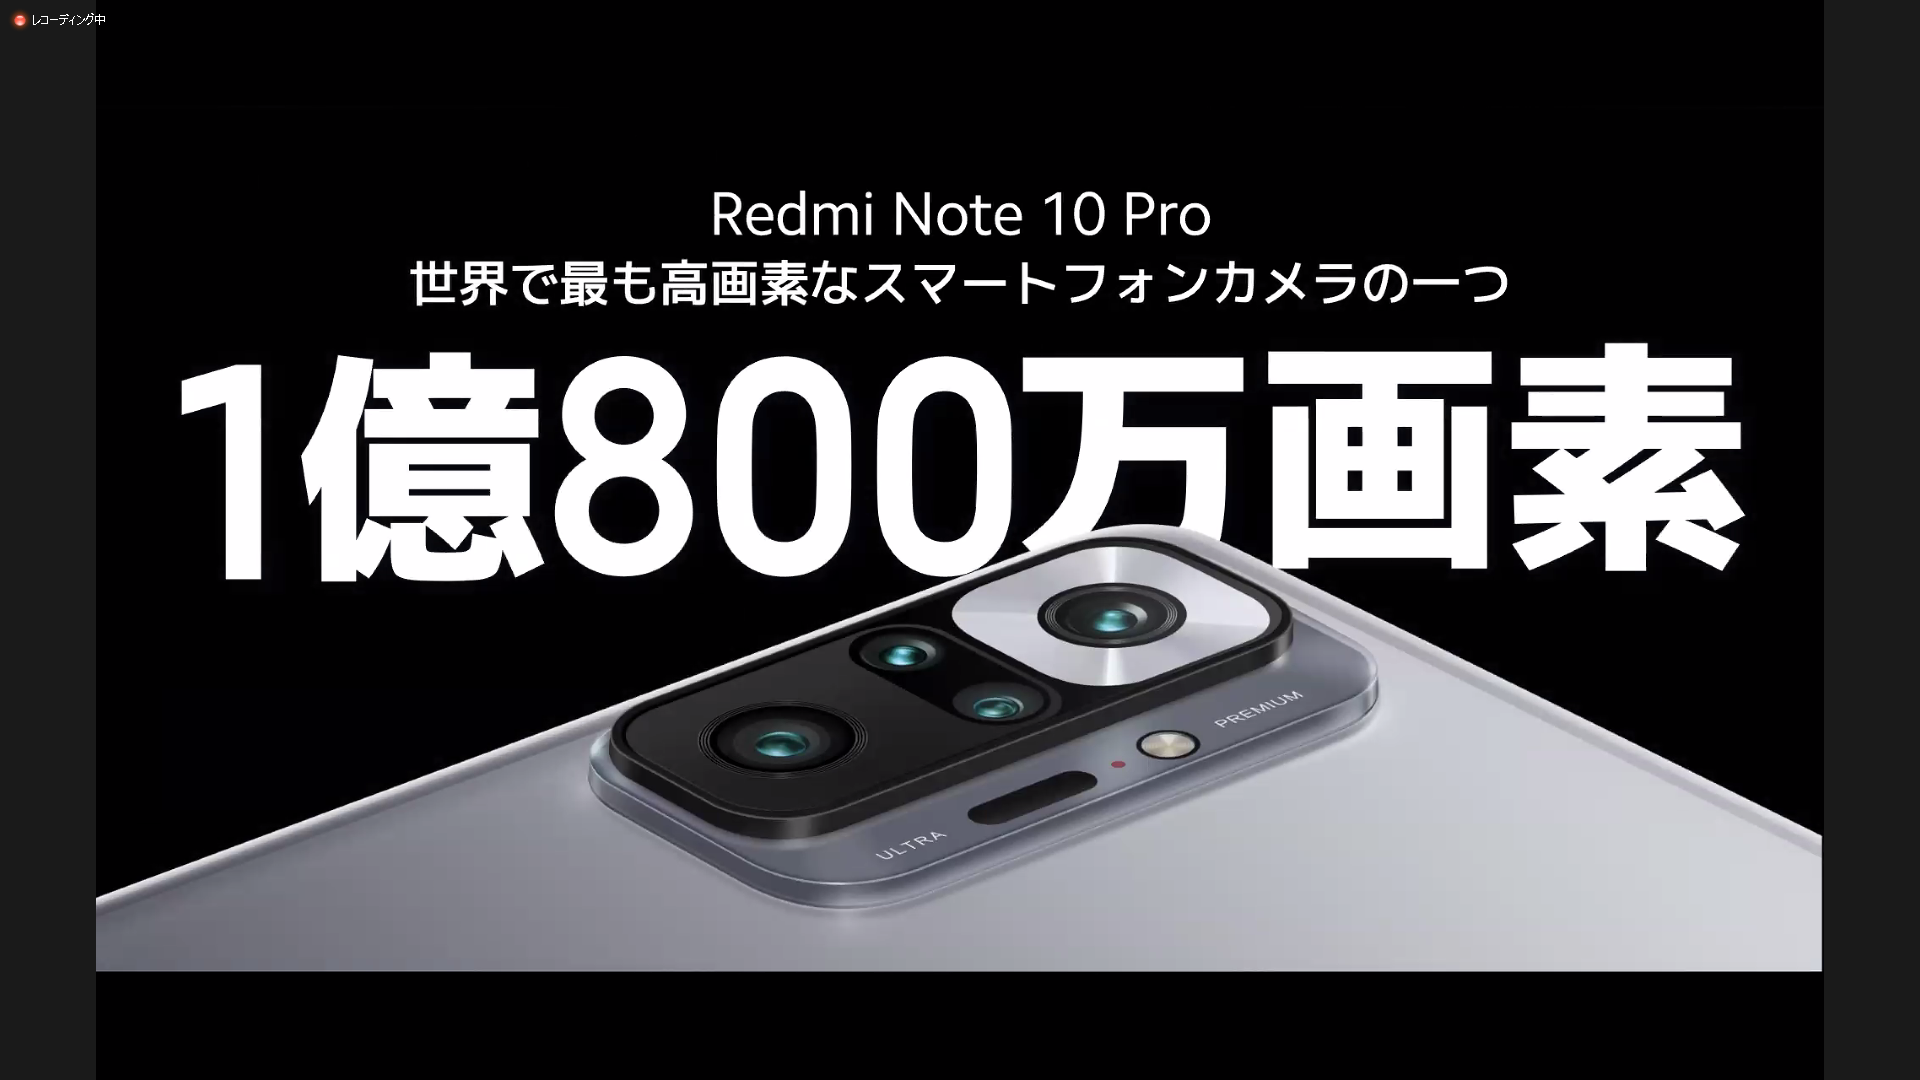 1億画素カメラスマホXiaomi Mi Note 10 (Mi CC9 pro)